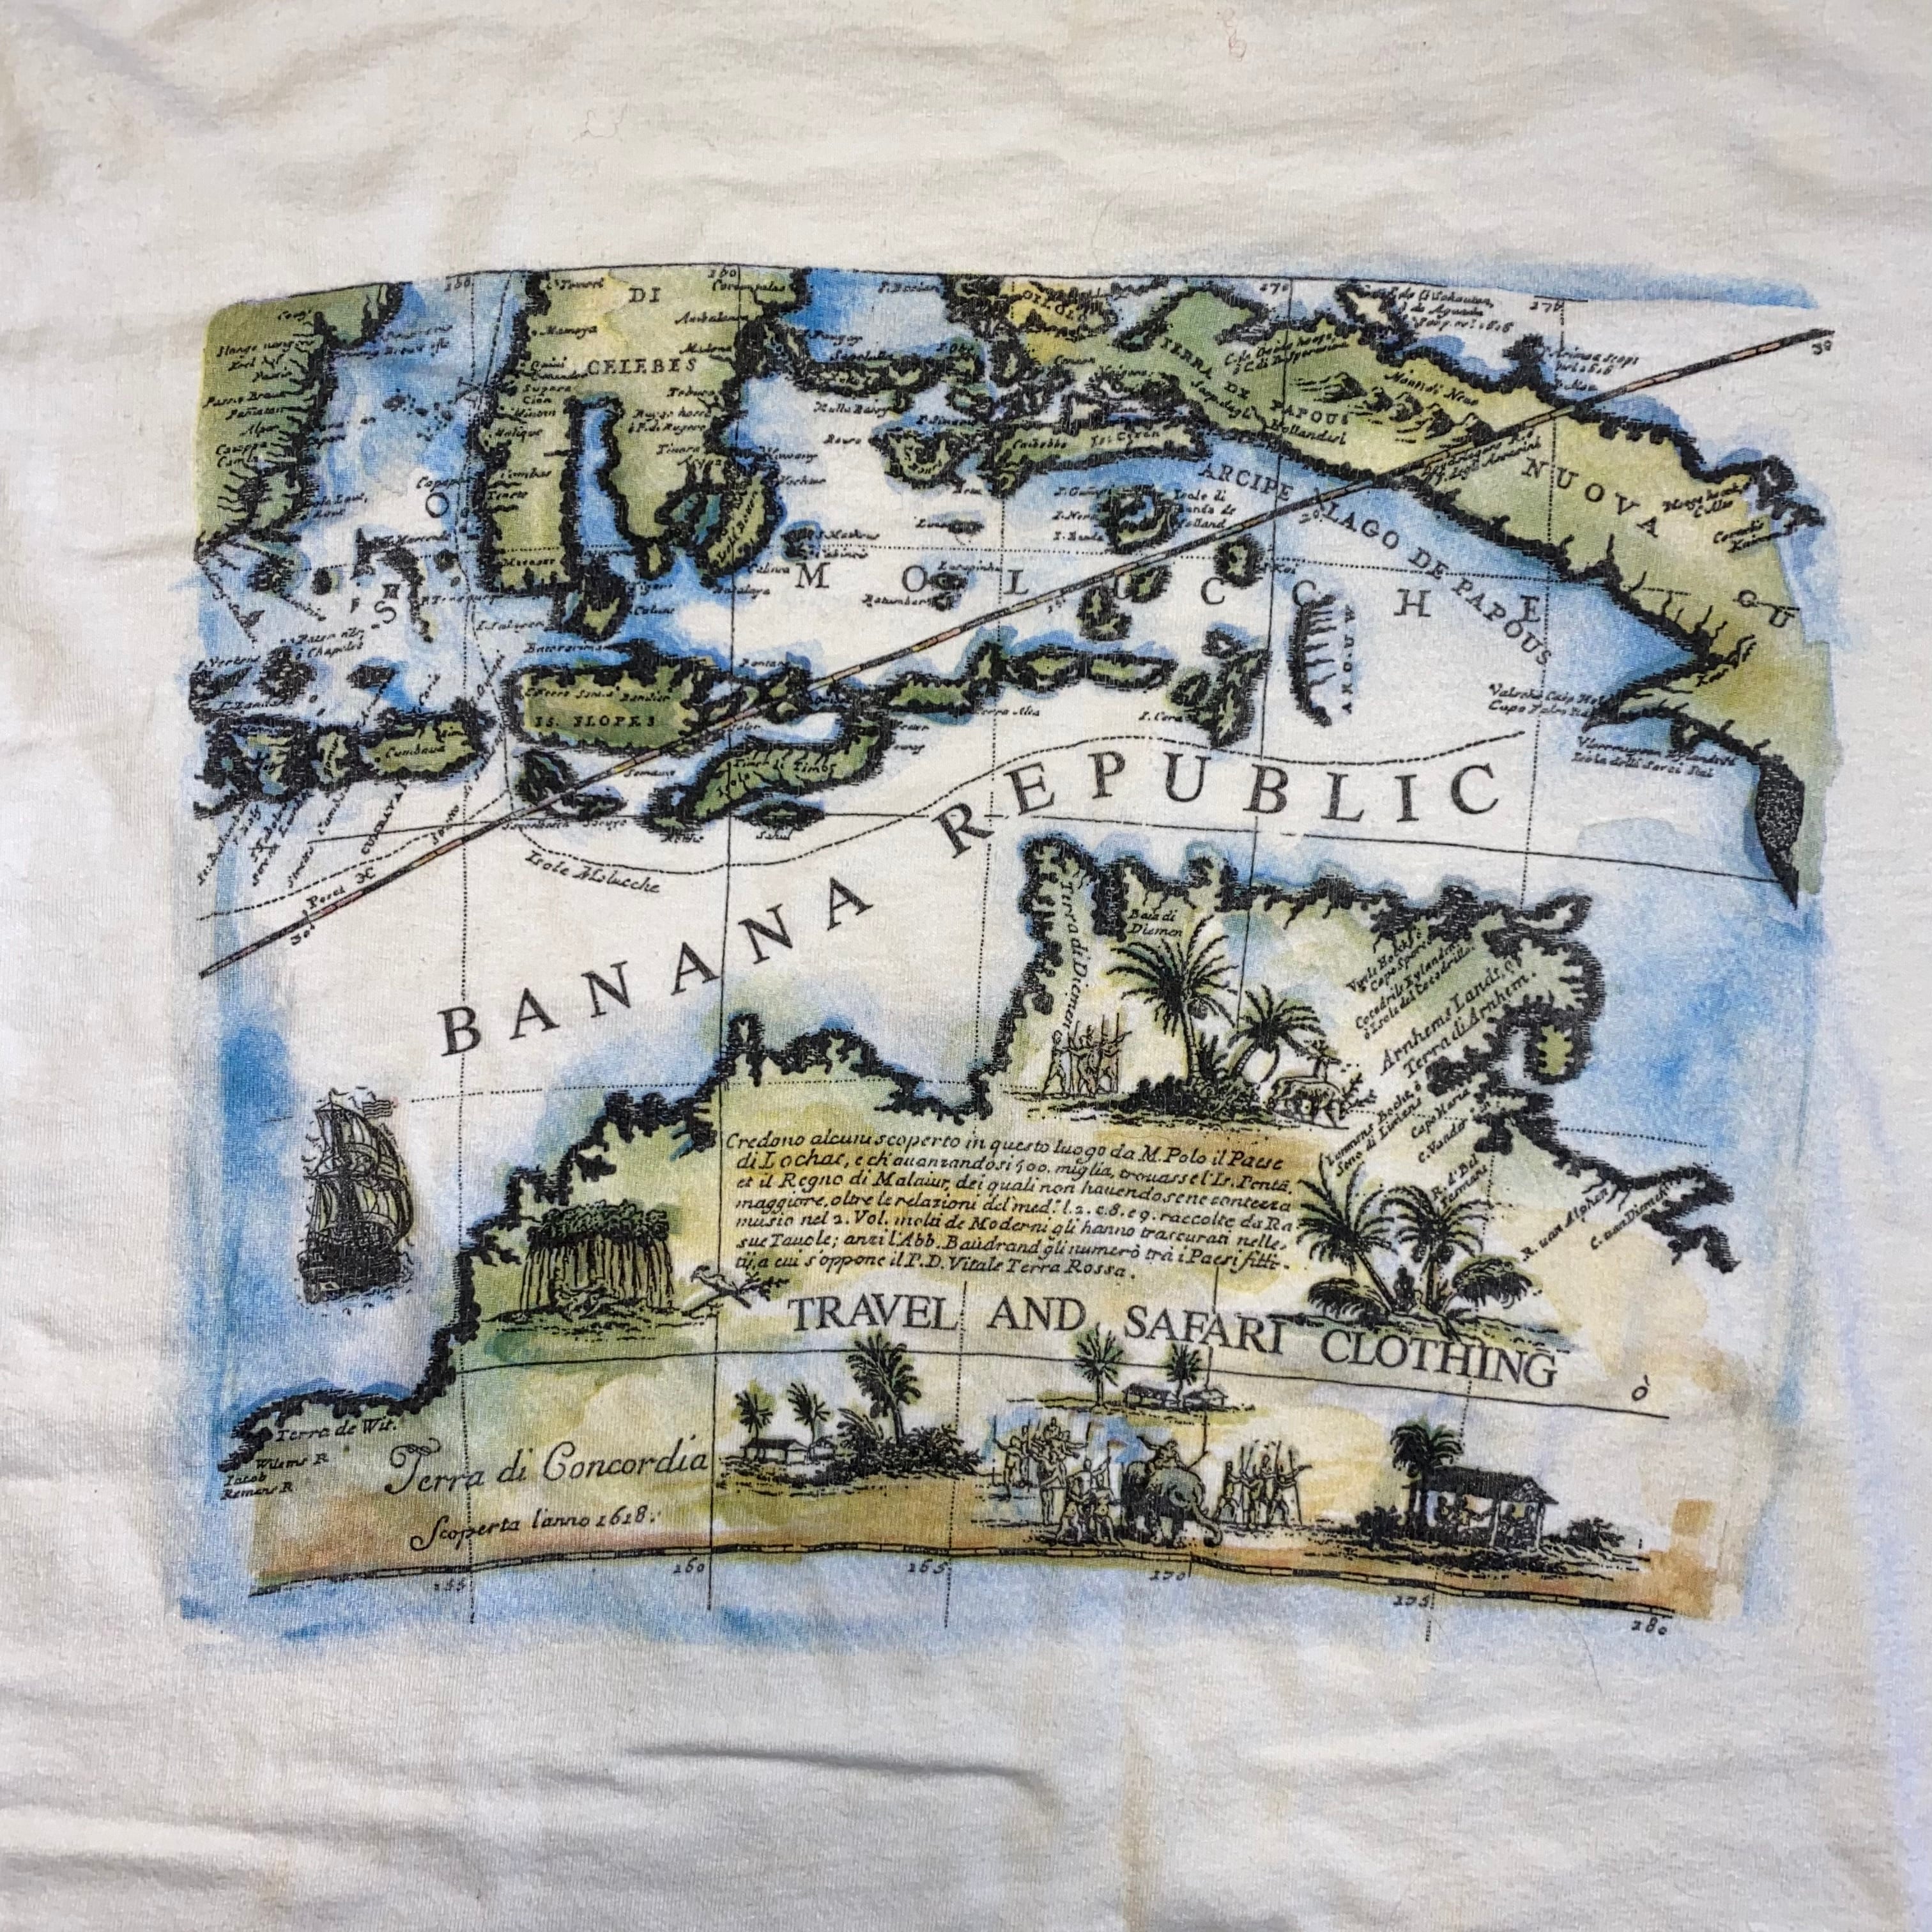 【未使用】80〜90s バナナリパブリック Tシャツ 世界地図